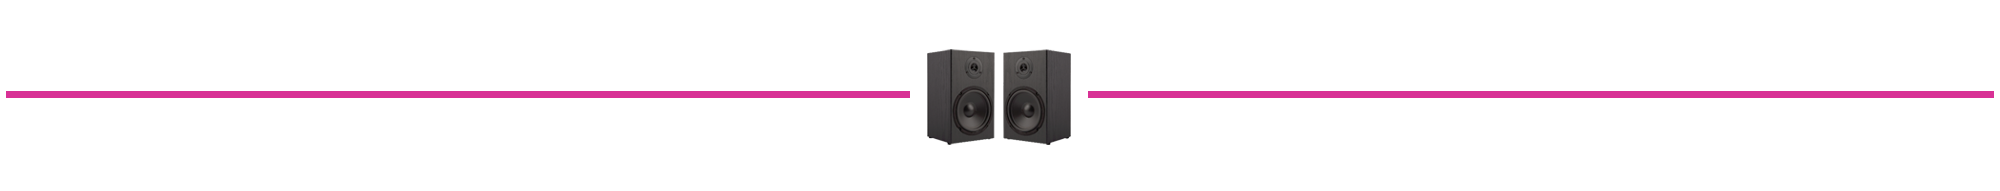 fct speakers divider